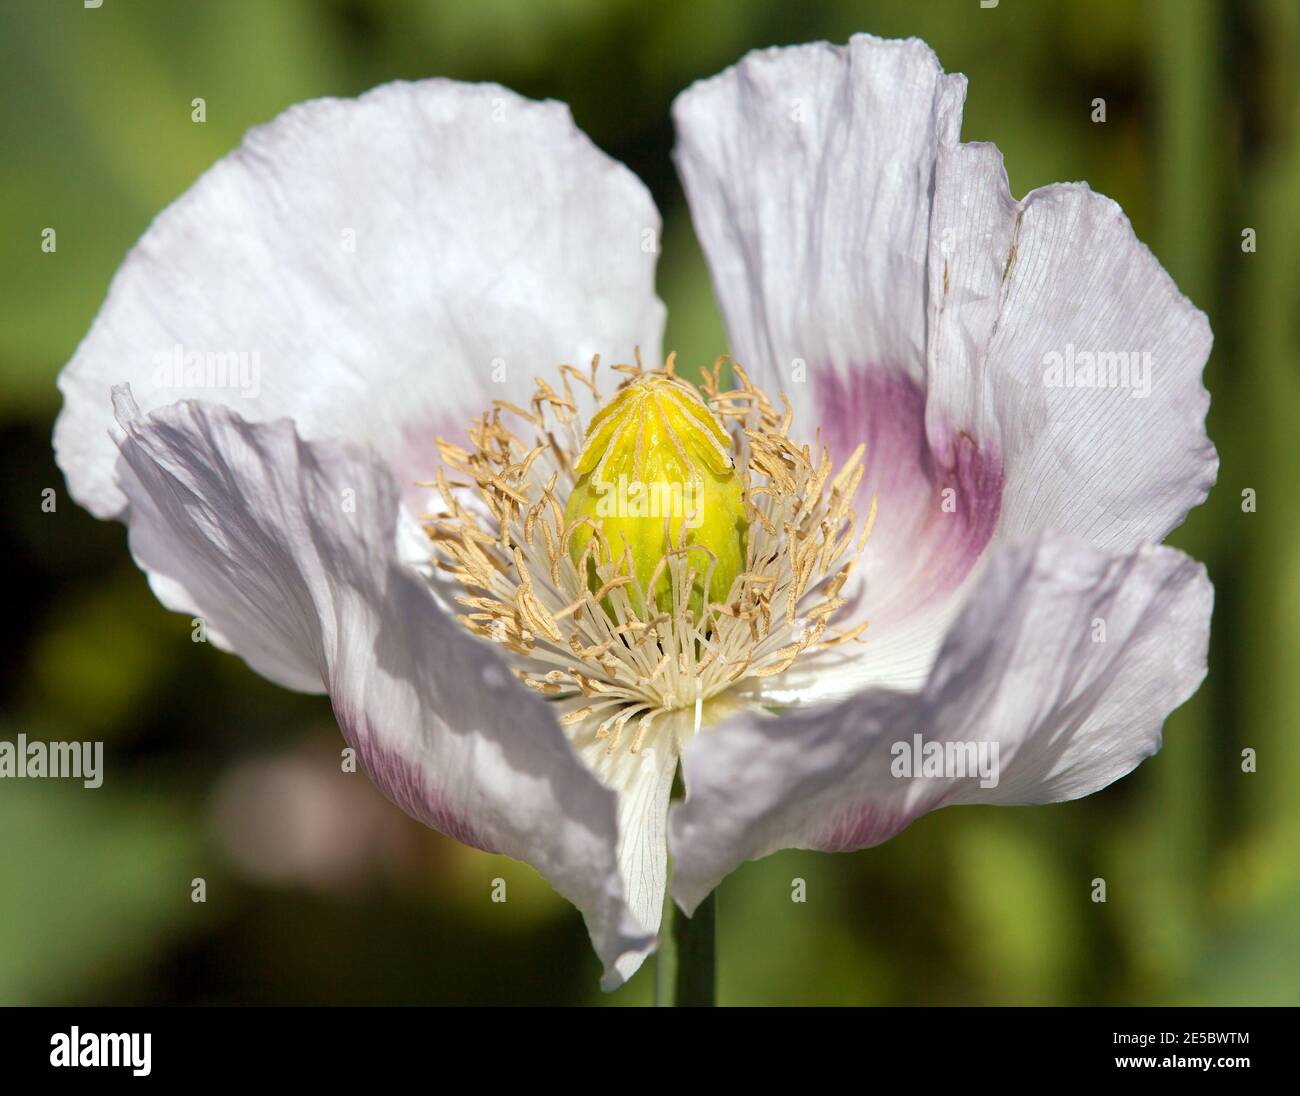 Détail du pavot à opium en fleurs papaver somniferum, fleur de pavot de couleur blanche est cultivé en République tchèque Banque D'Images